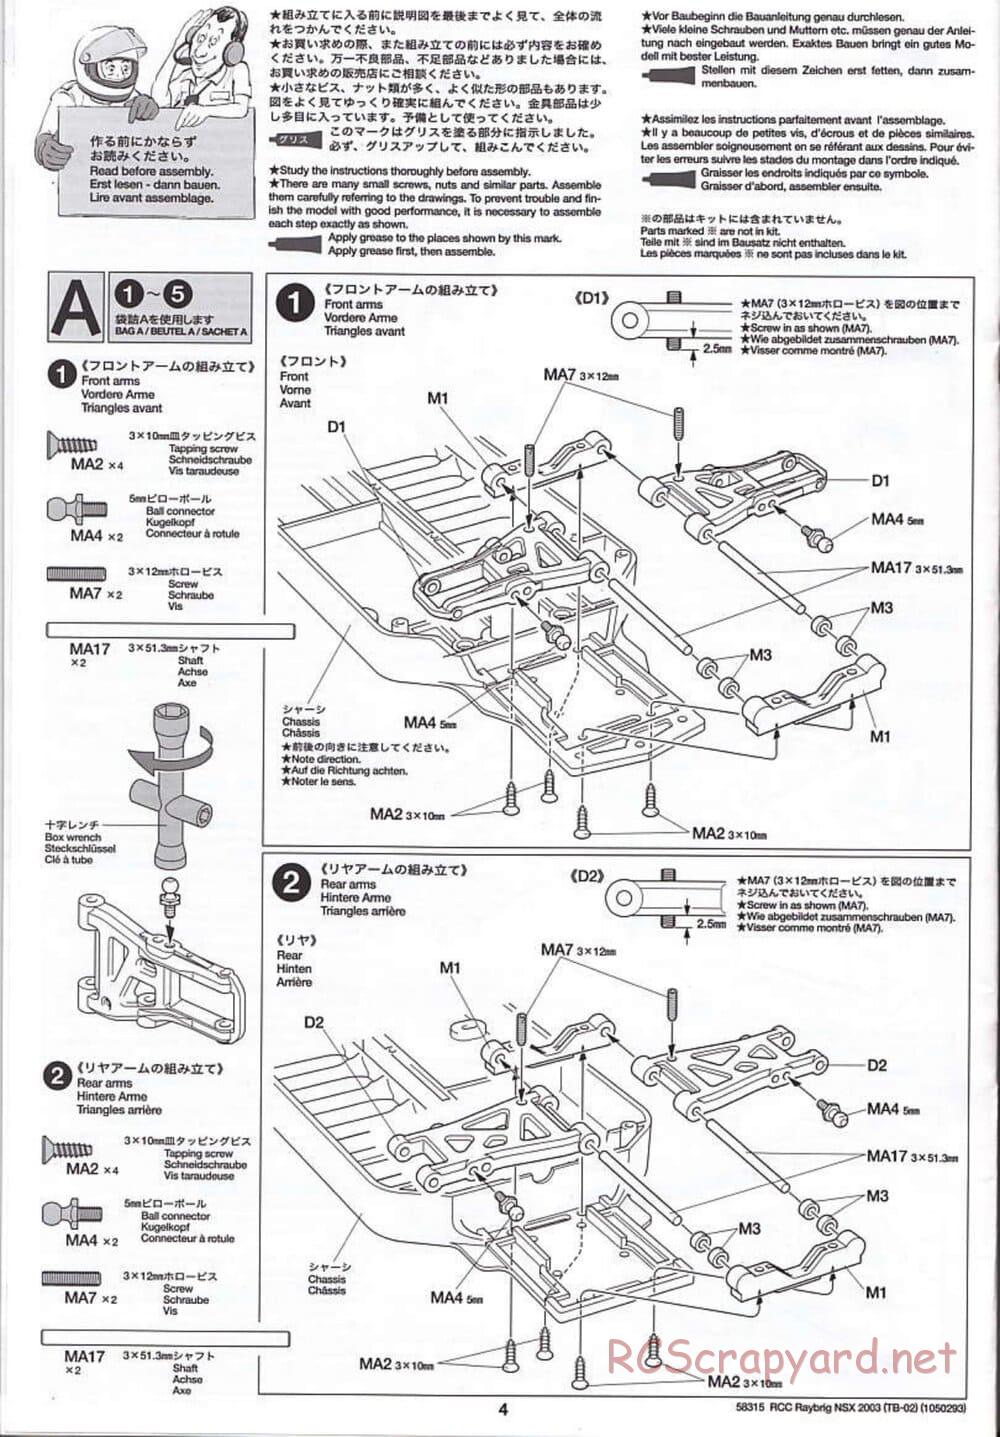 Tamiya - Raybrig NSX 2003 - TB-02 Chassis - Manual - Page 4